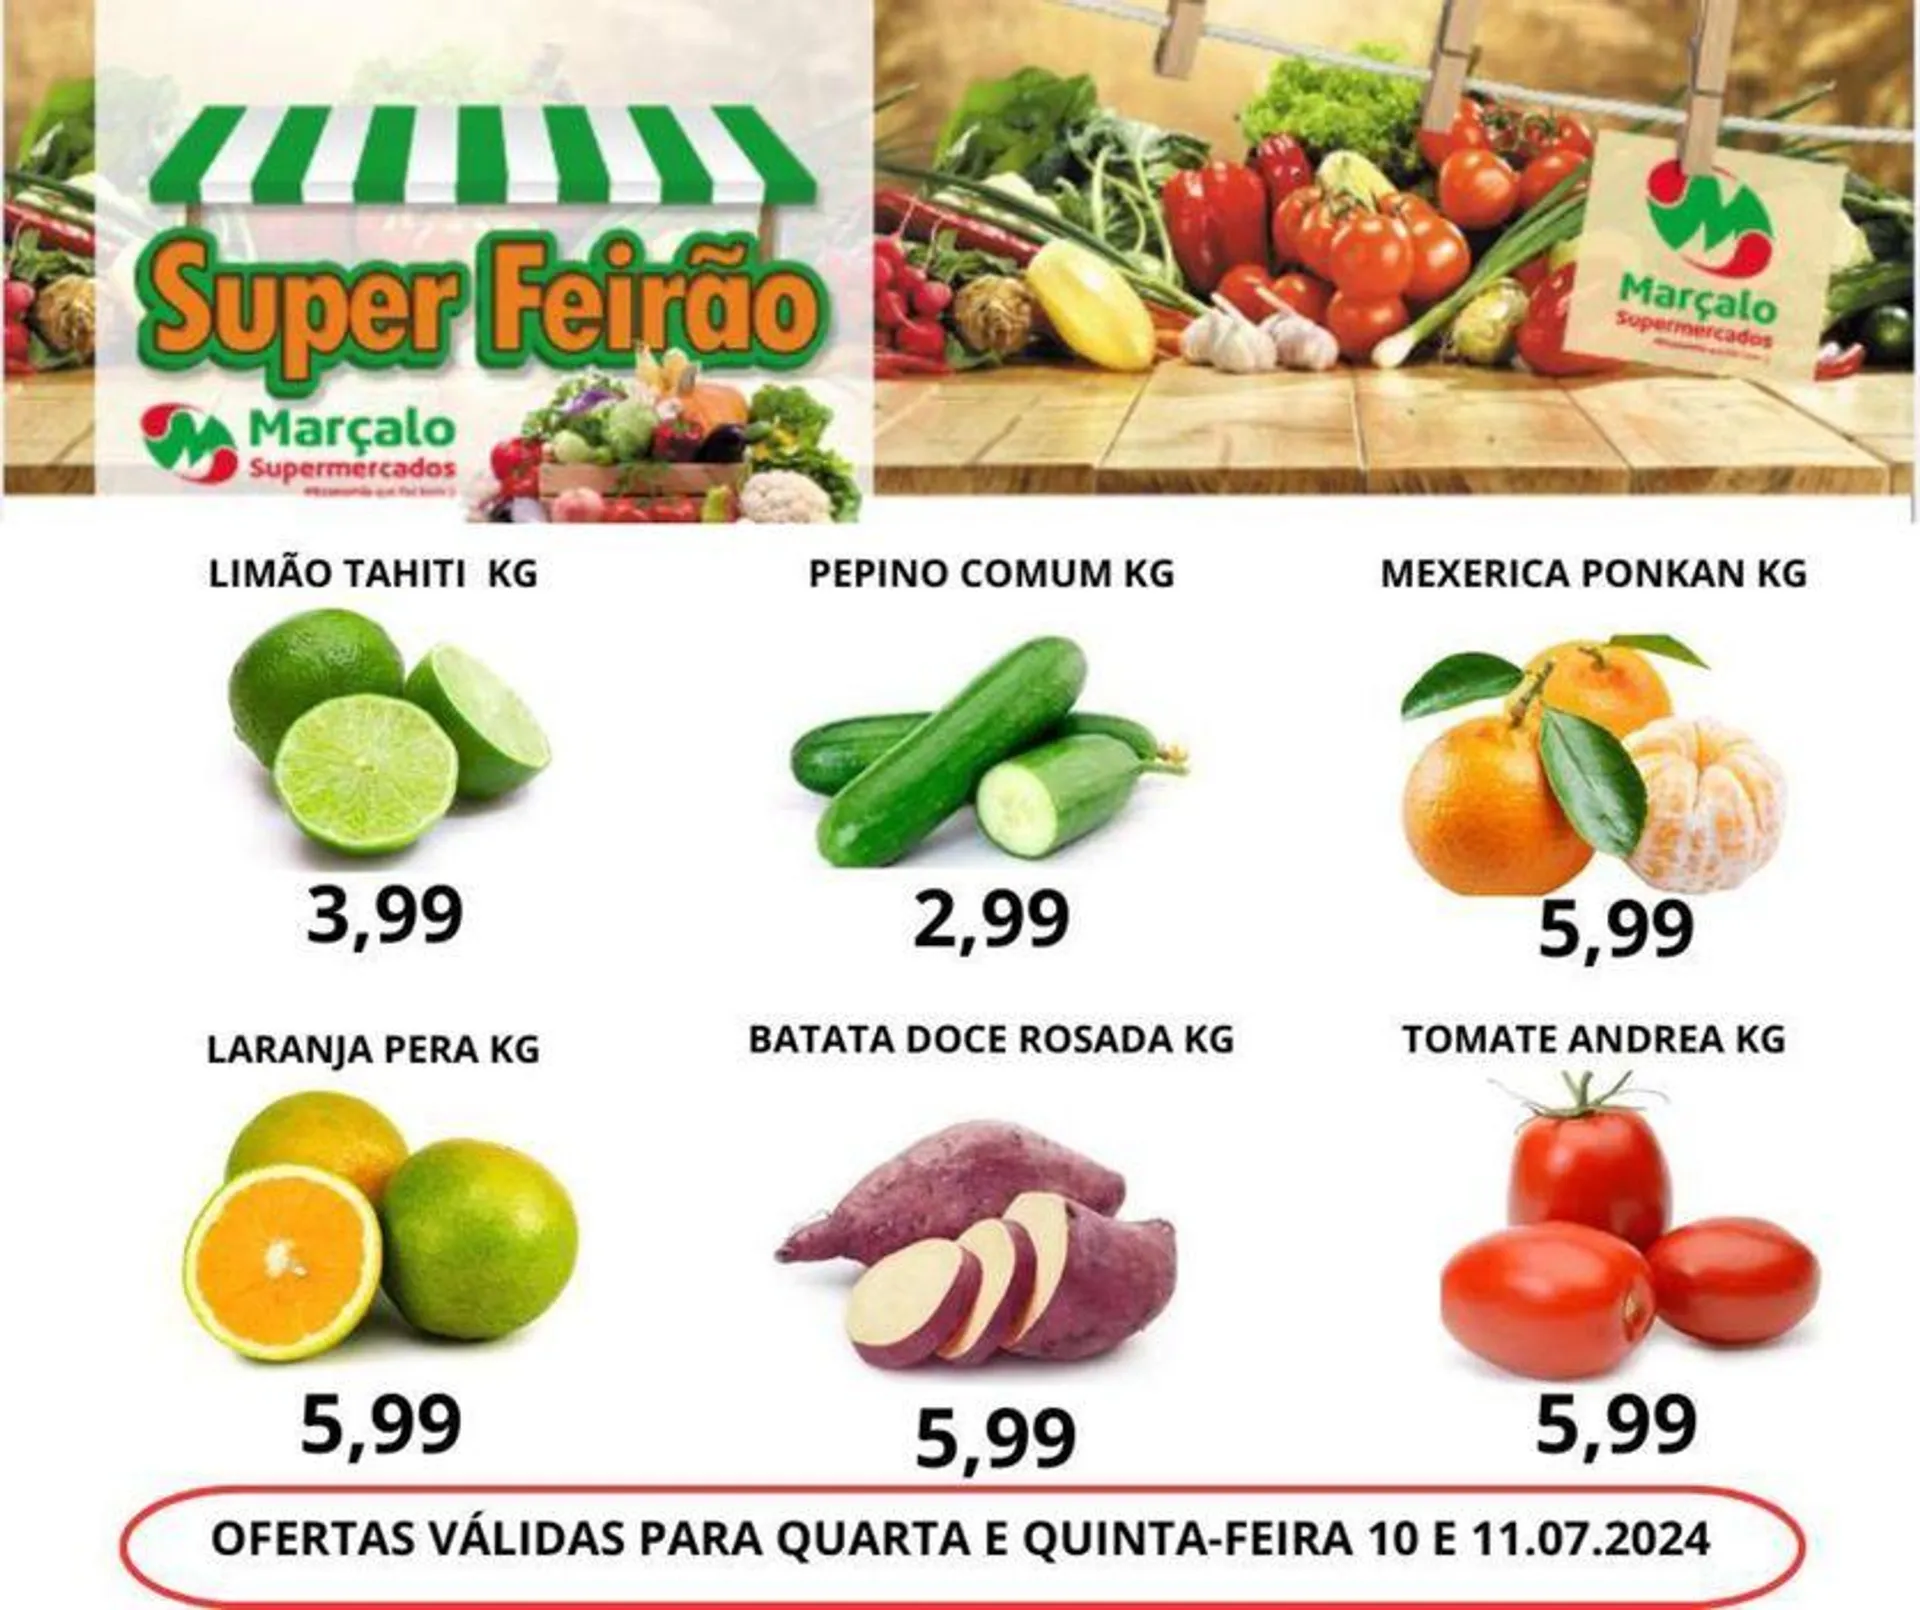 Ofertas Supermercados Marçalo - 1